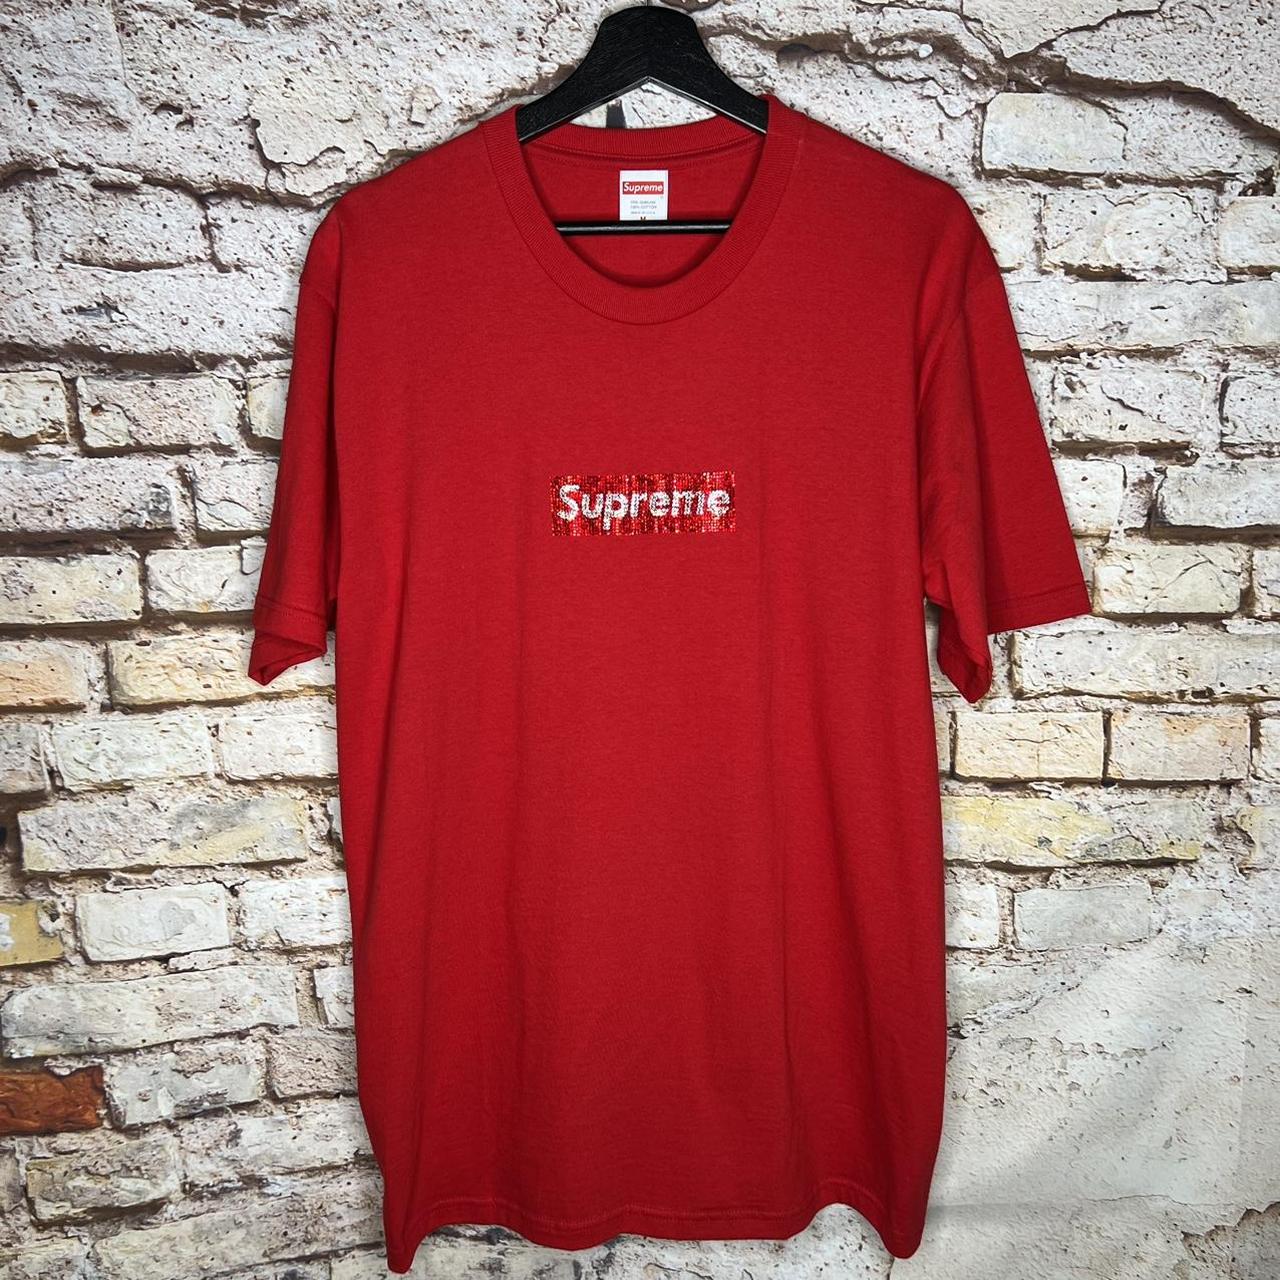 Supreme Swarovski SS19 Box Logo T Shirt Size: M... - Depop